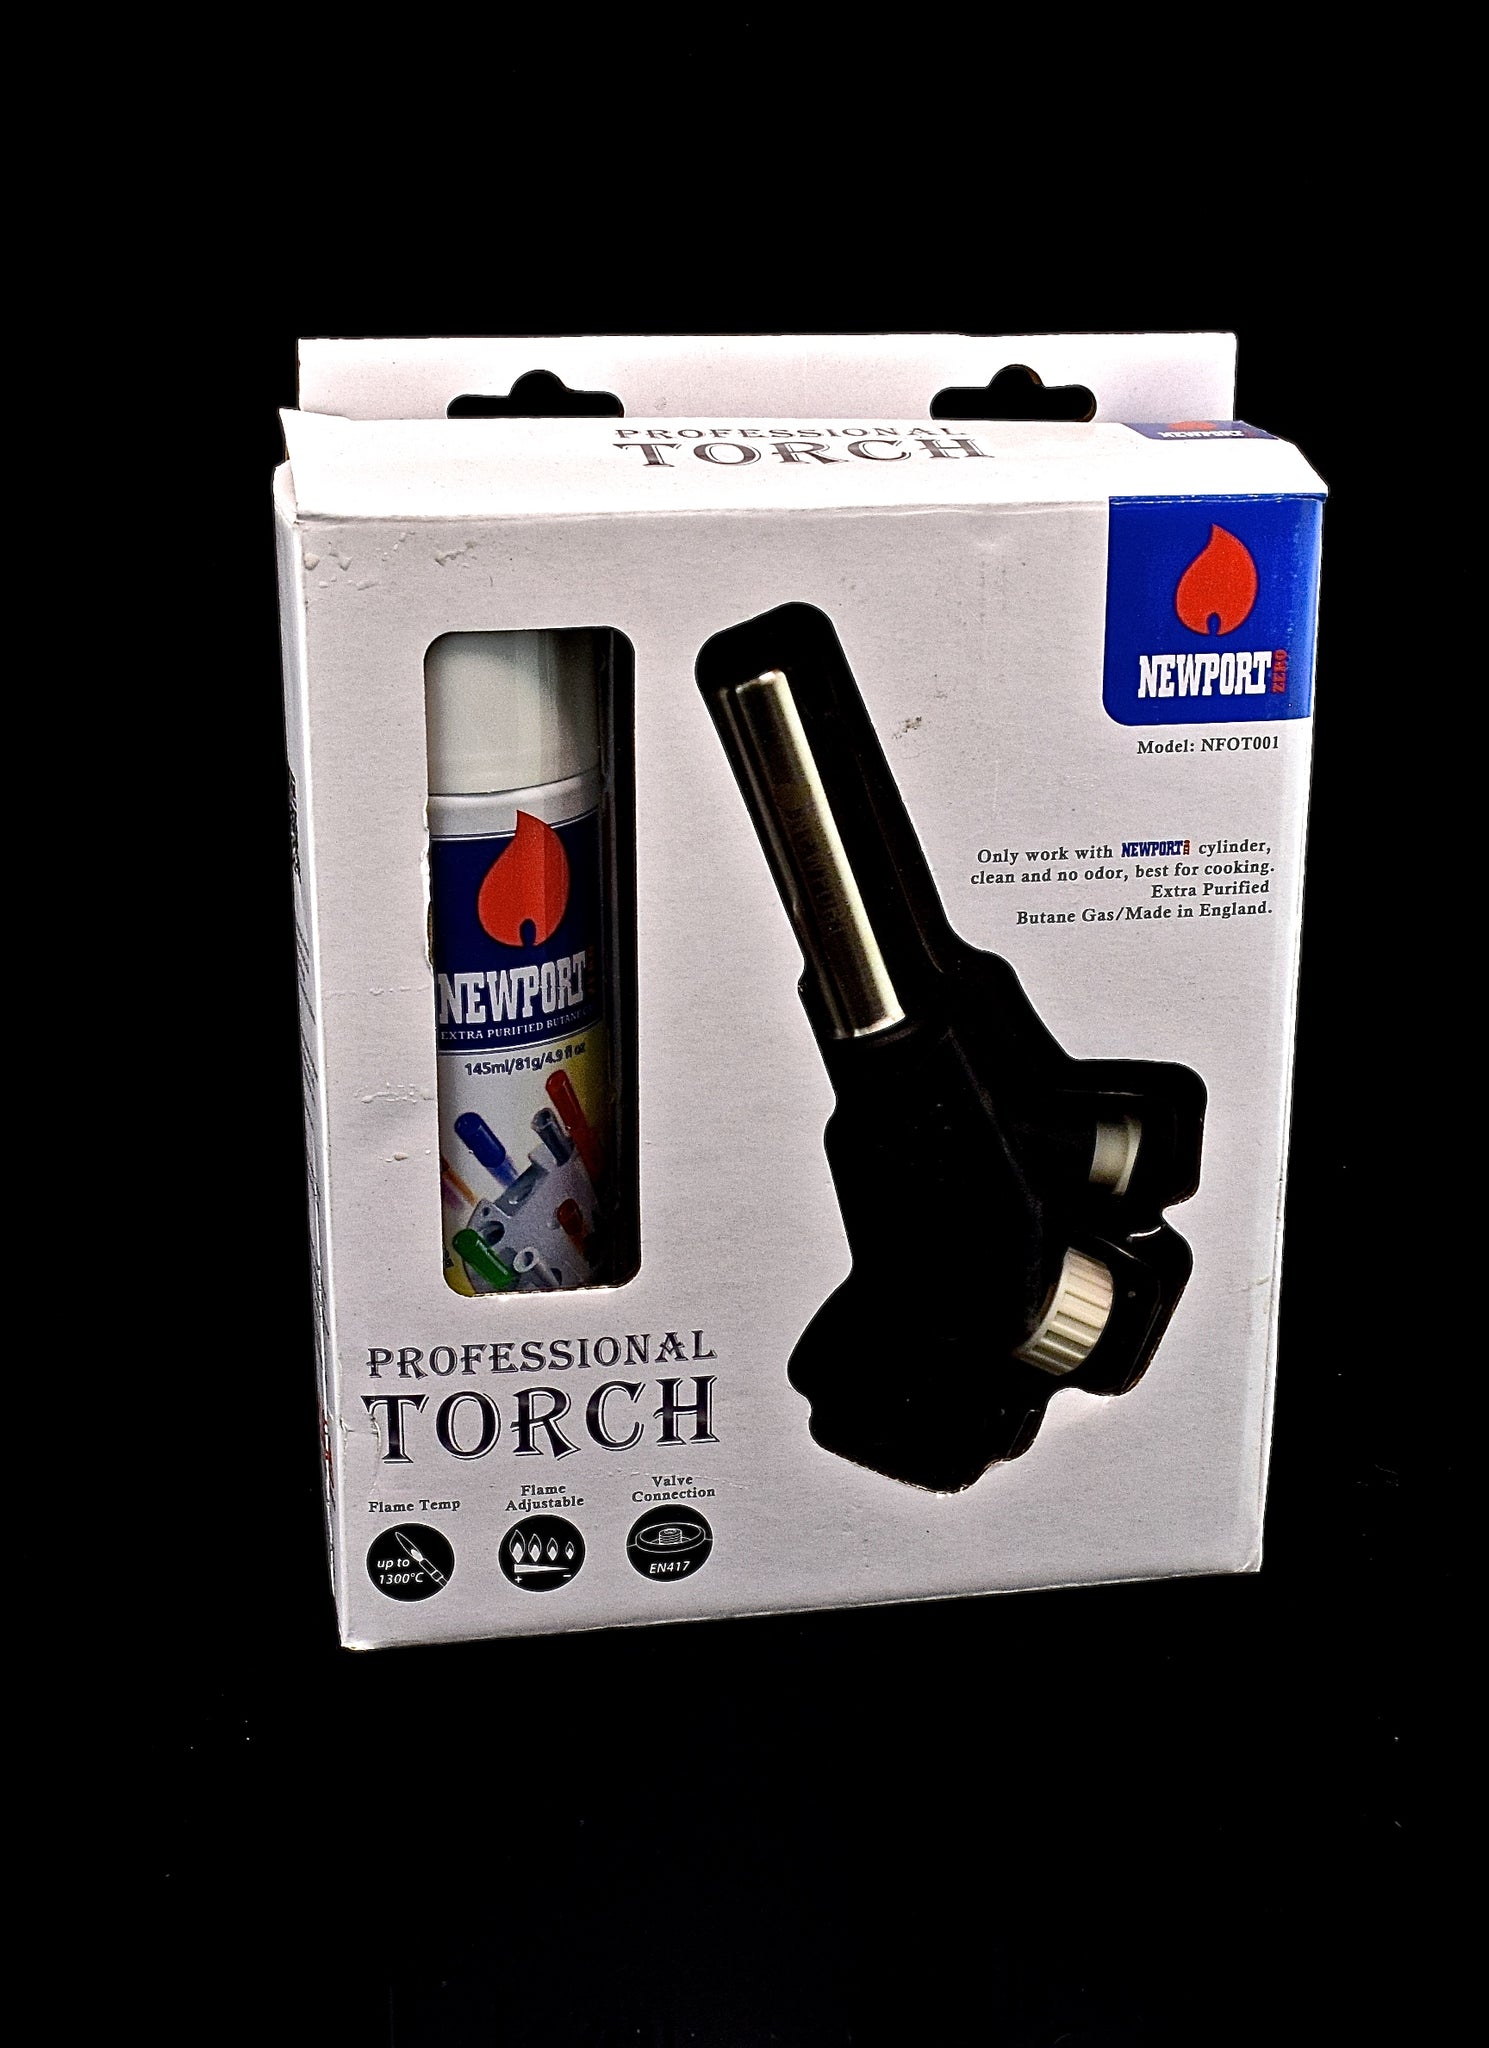 Newport Professional Torch | Wholesale Newport-Model:-NFOT001